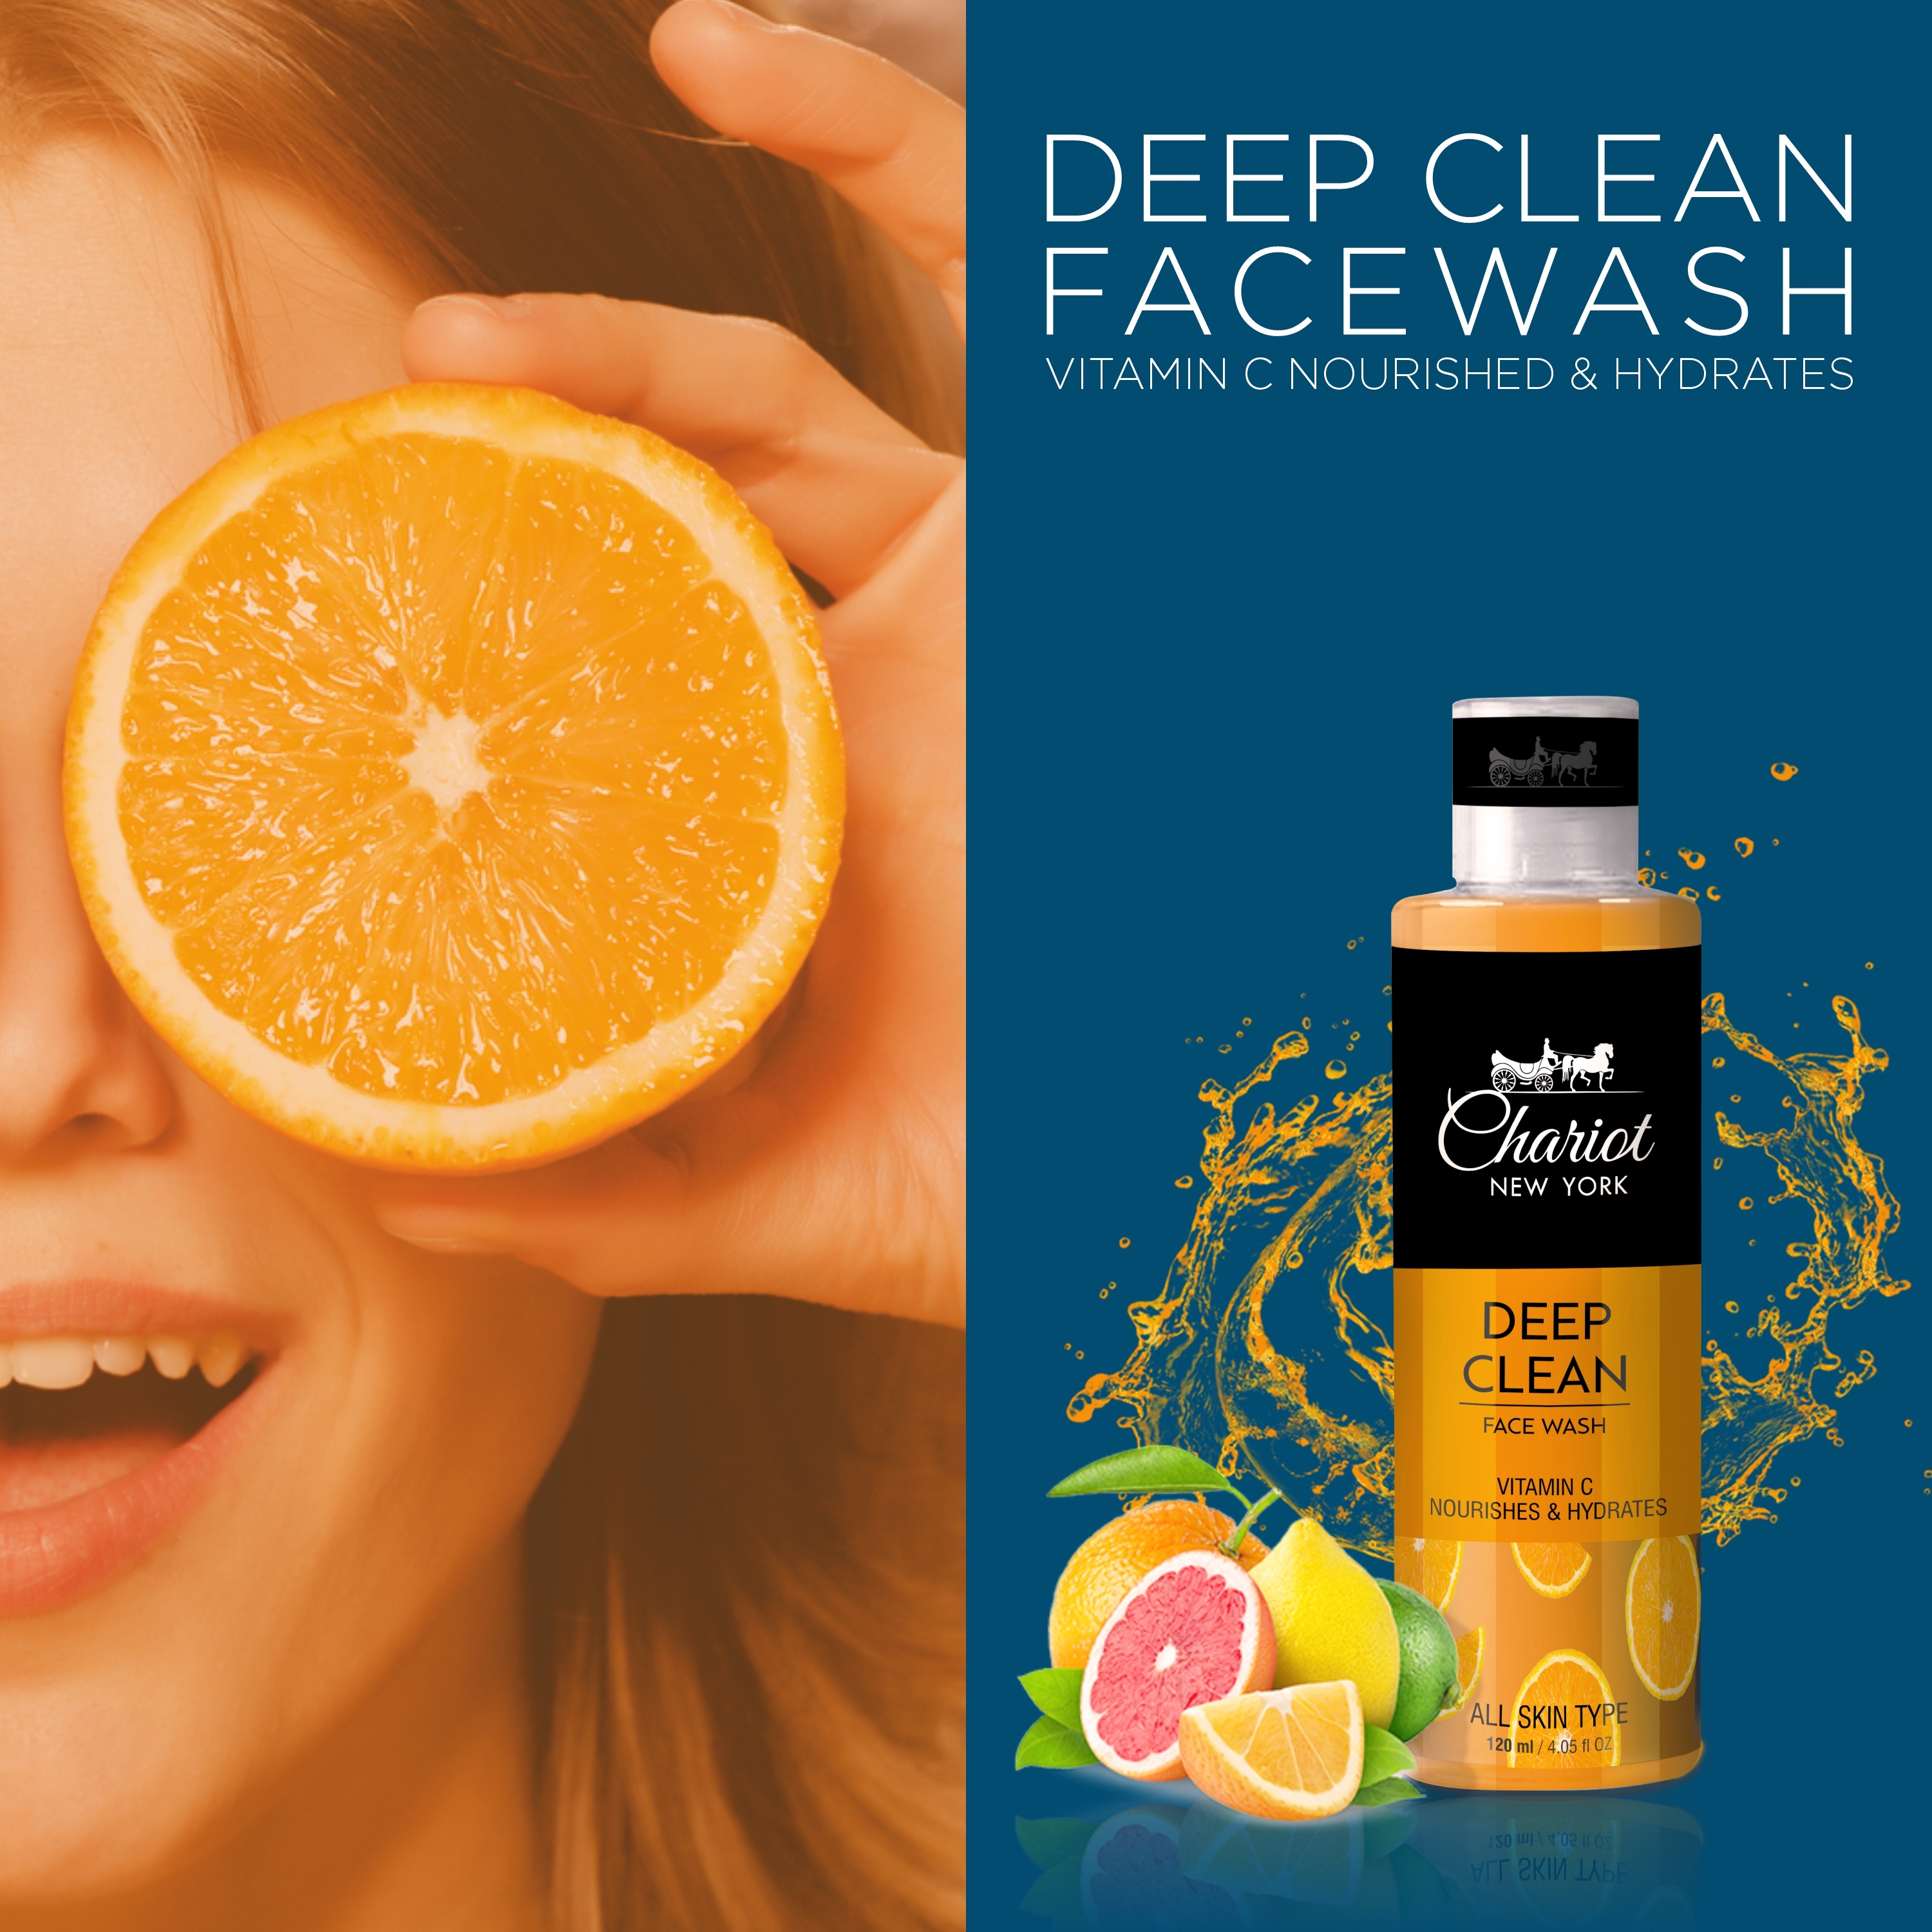 Deep clean Vitamin C Face Wash